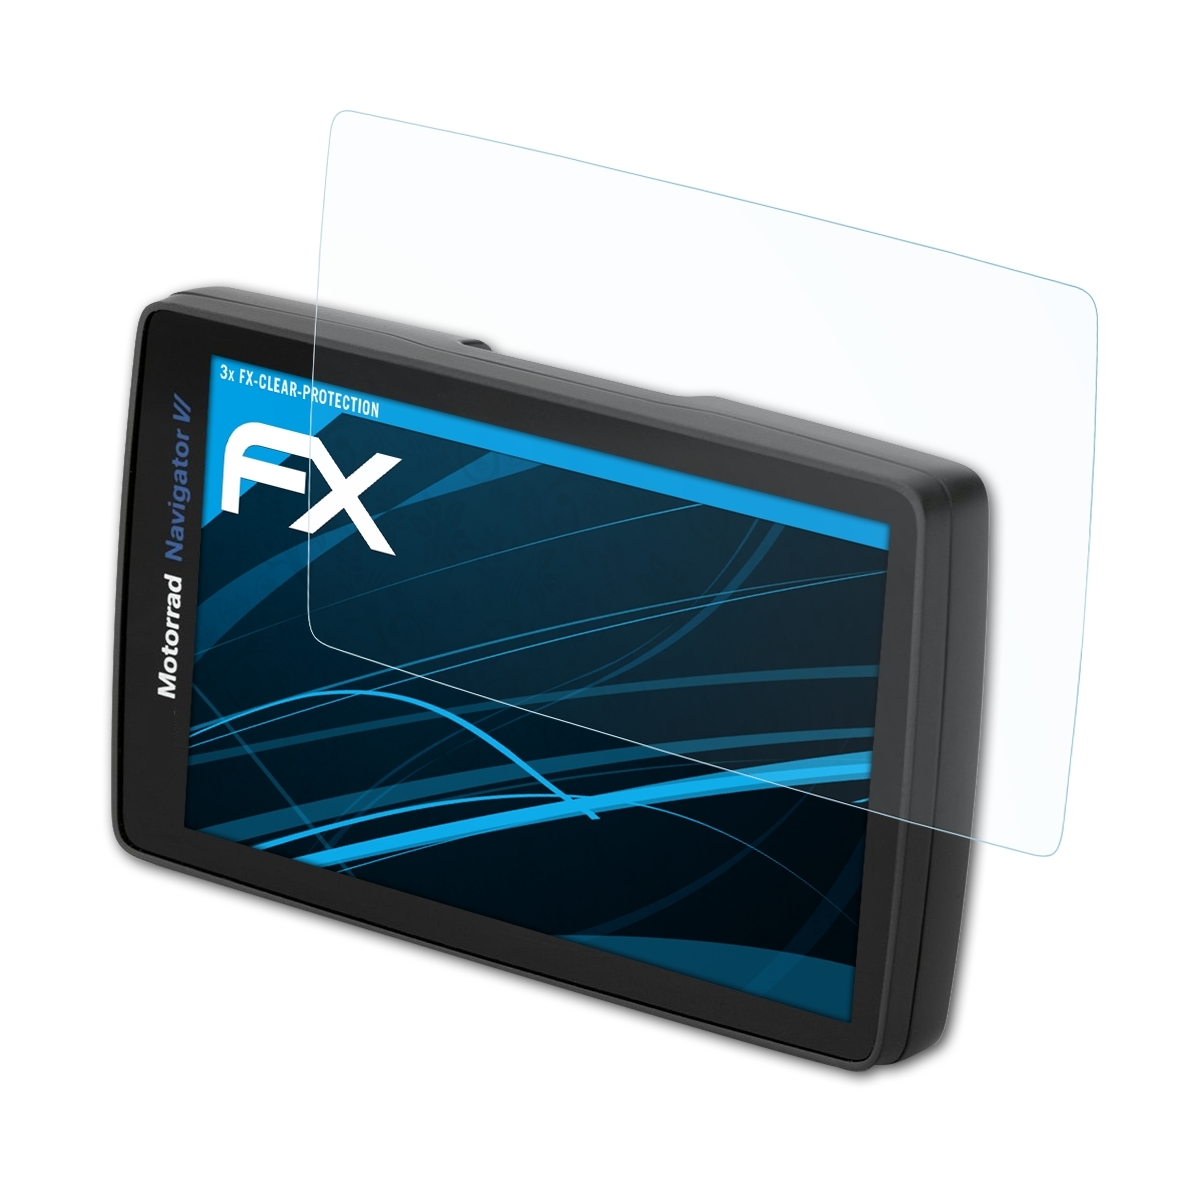 FX-Clear VI) Displayschutz(für BMW 3x Navigator ATFOLIX